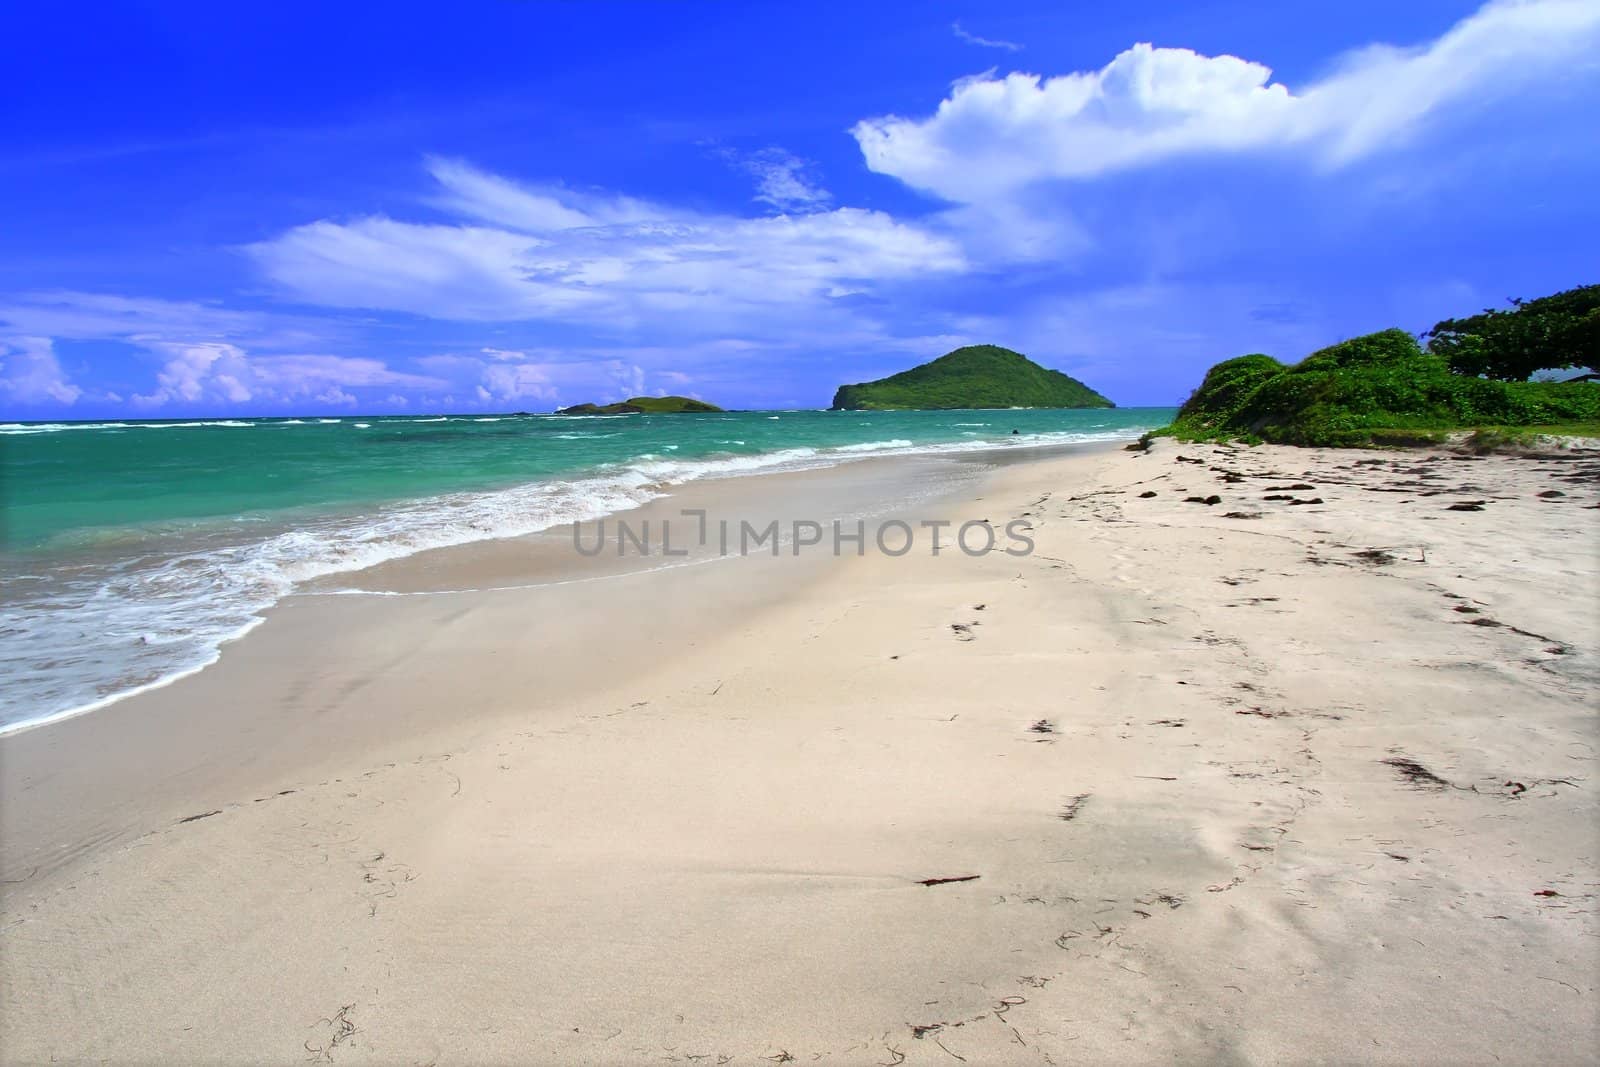 The Beautiful Anse de Sables Beach on the Caribbean island of Saint Lucia.